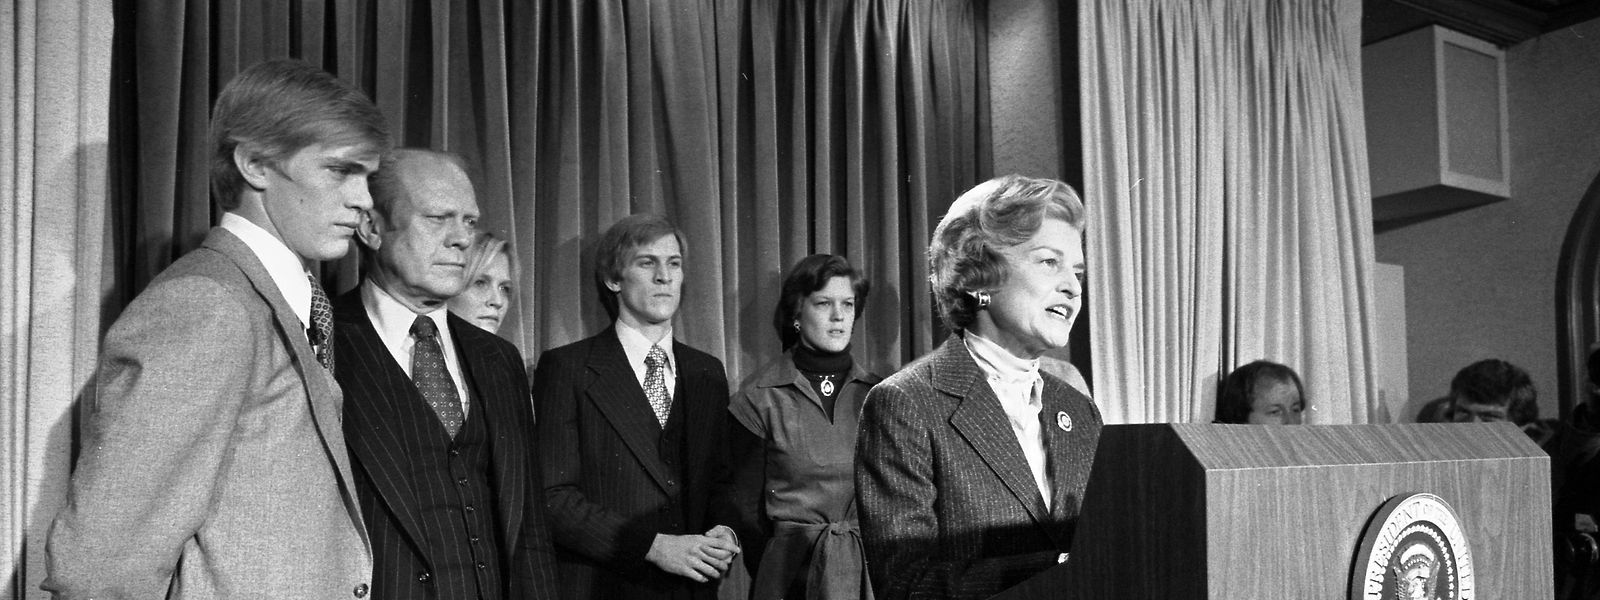 Einzigartig: Für den unterlegenen Präsidenten Gerald Ford (2.v.l.) spricht seine Frau Betty. Der Präsident hatte im Wahlkampf Stimmen gelassen, darunter auch seine eigene. 